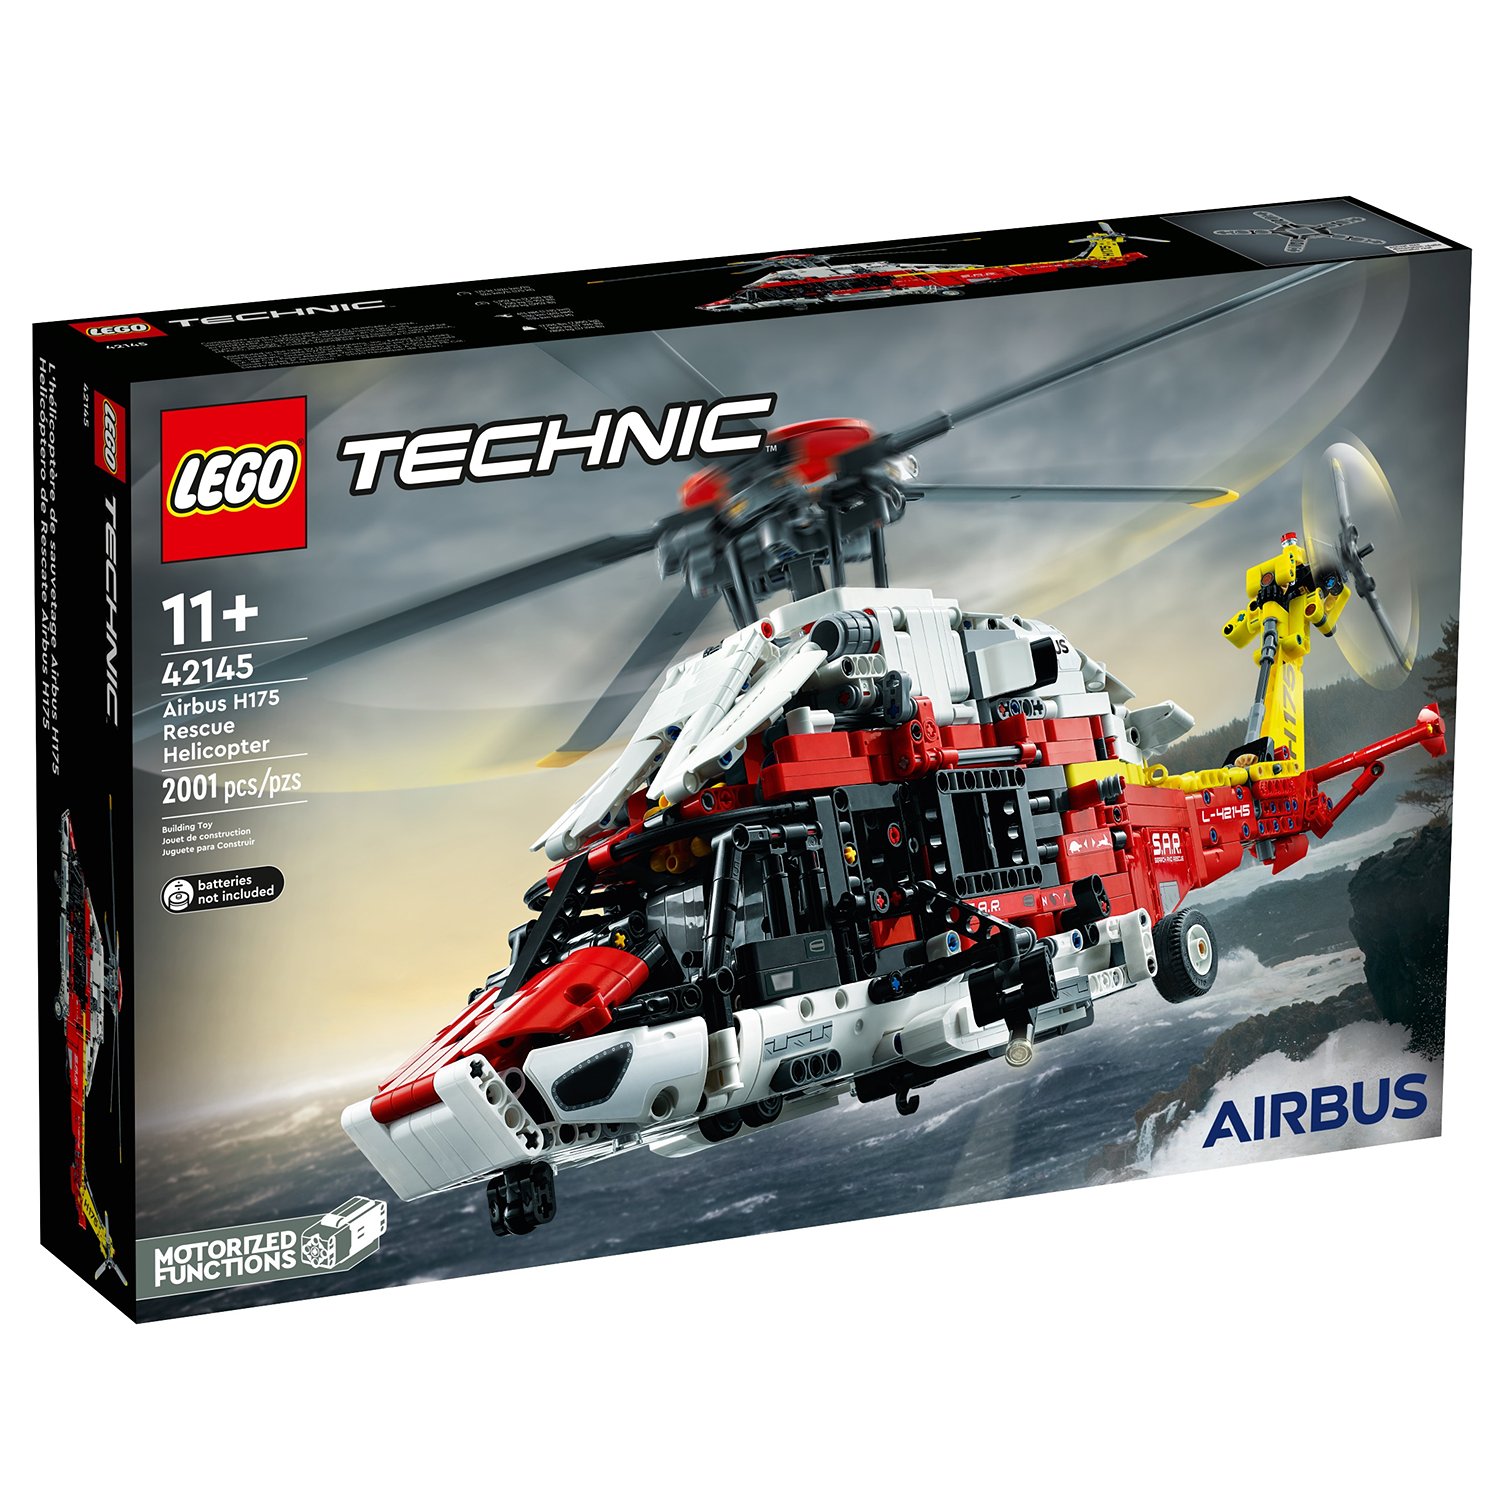 Конструктор LEGO Technic Спасательный вертолет Airbus H175, 2001 деталь, 42145